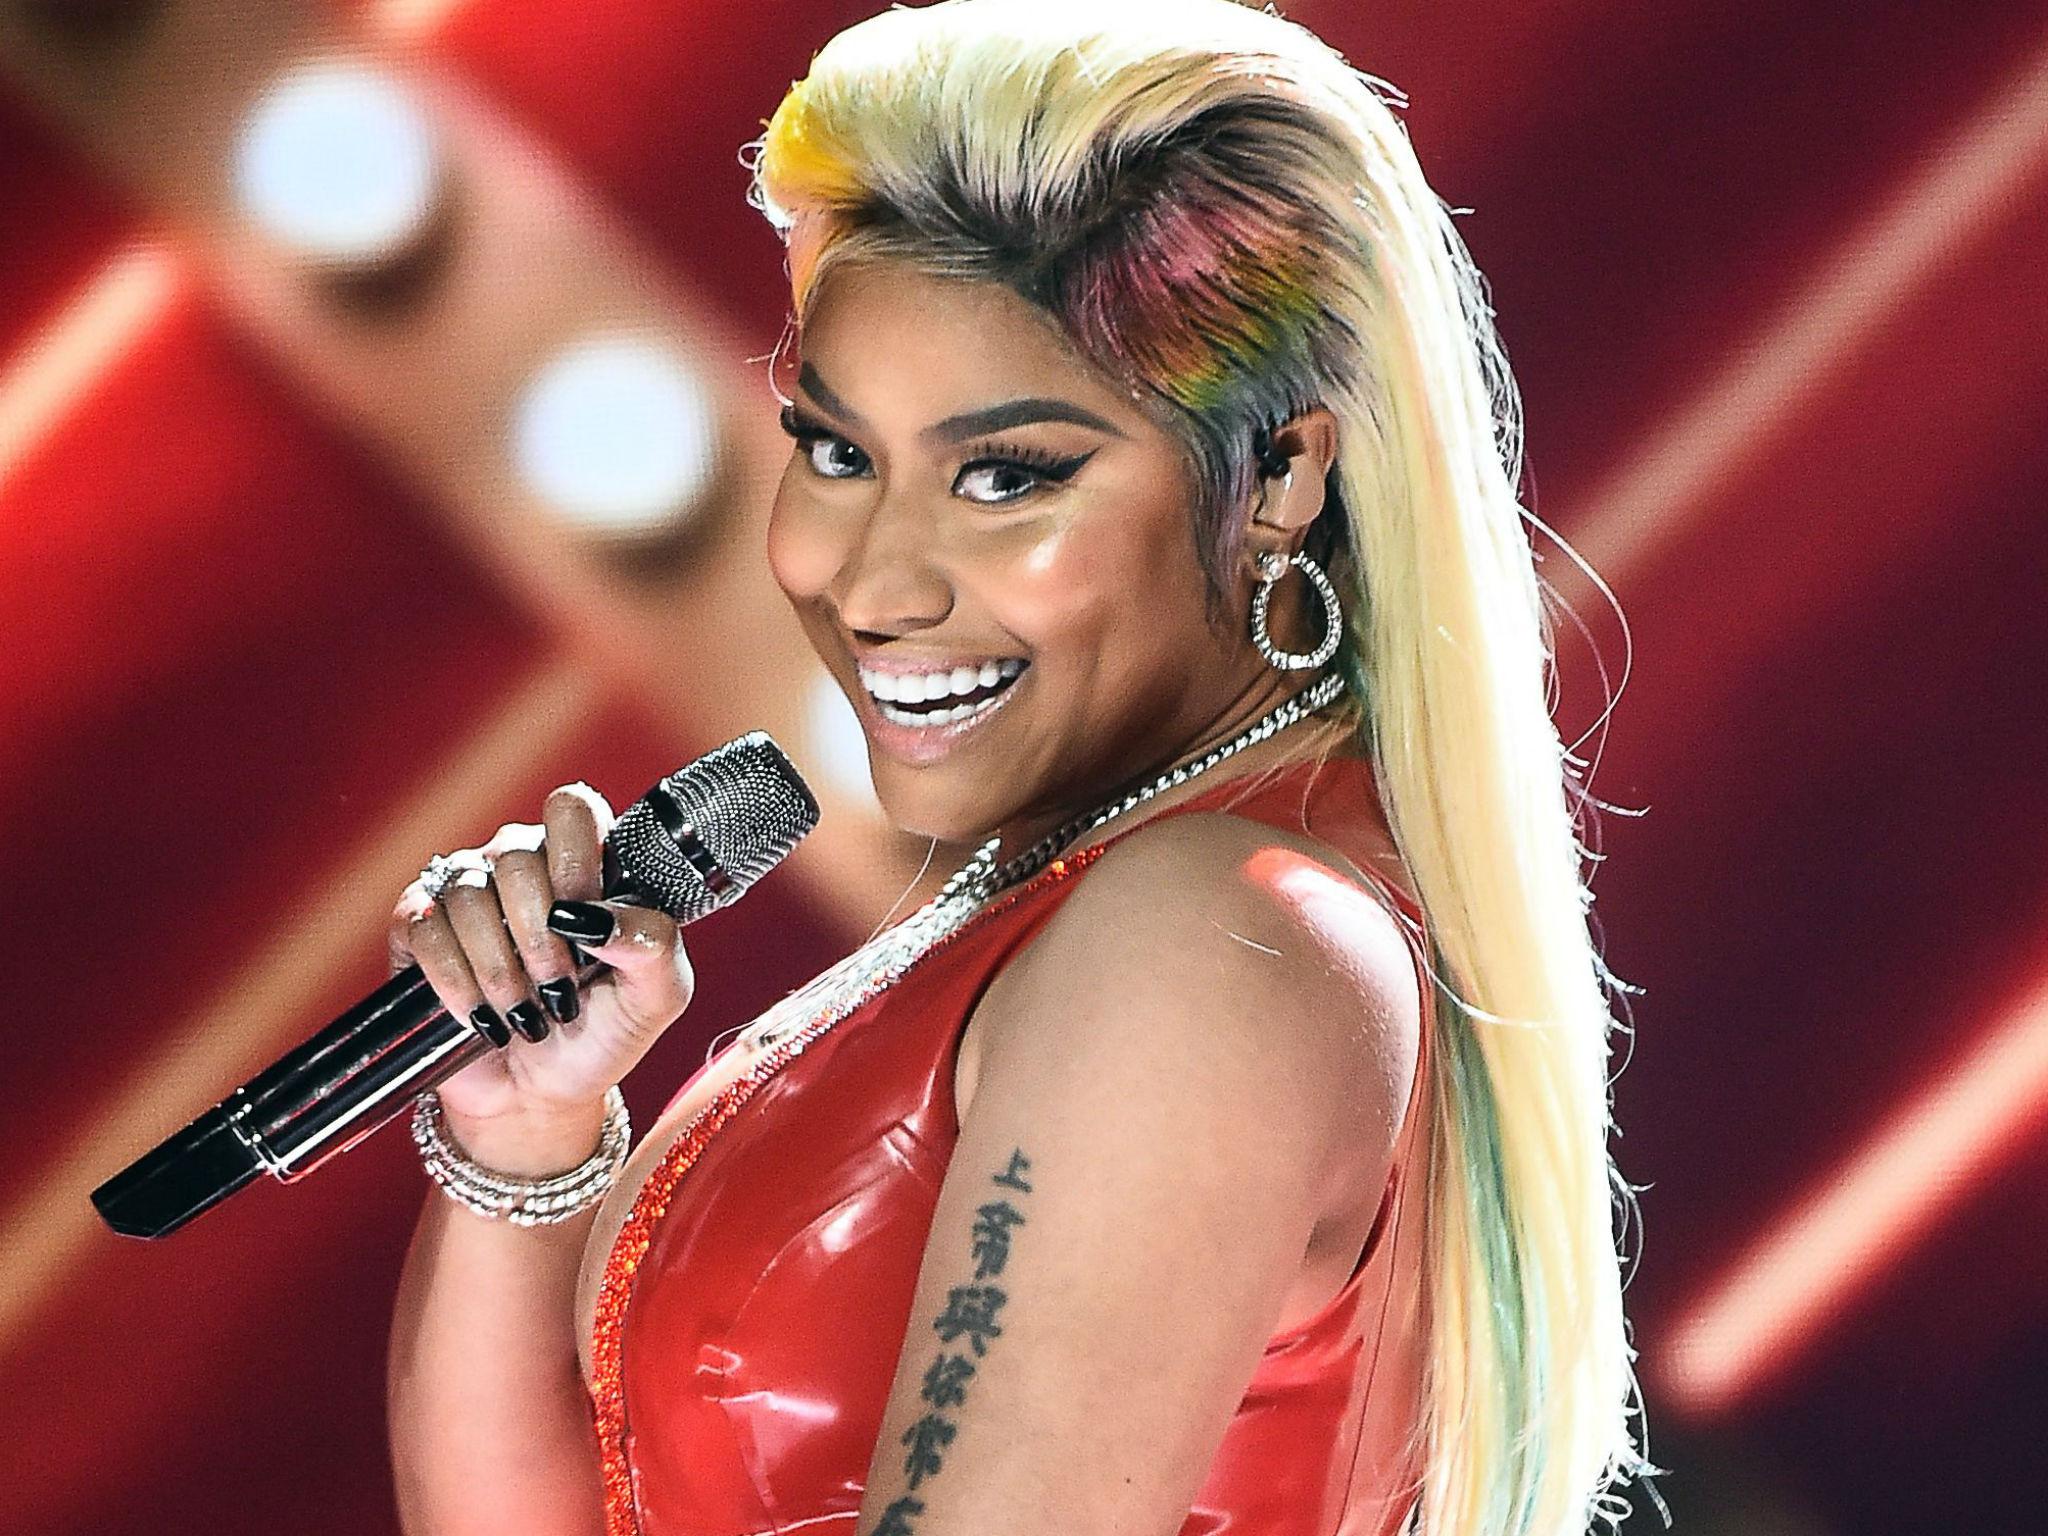 El bochorno de Nicki Minaj al cancelar concierto en directo 1